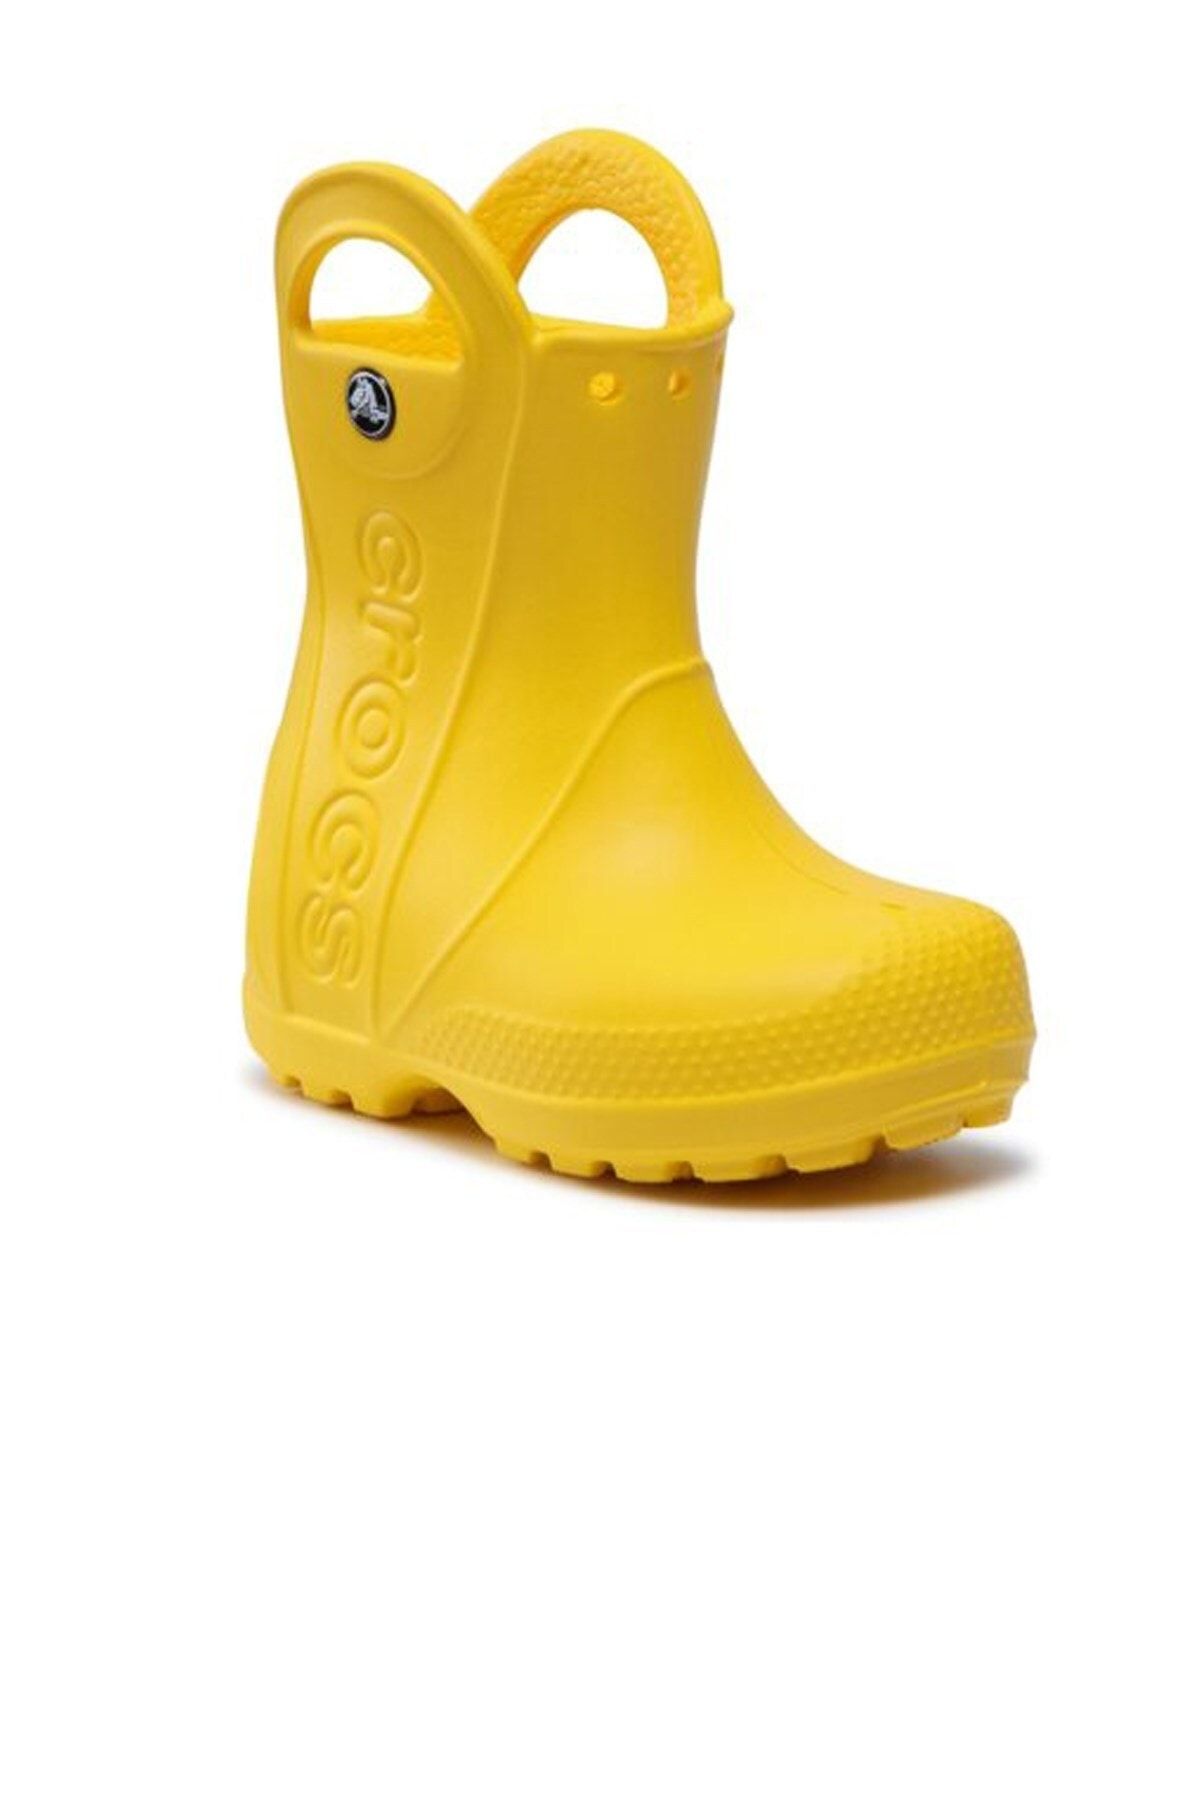 Crocs Handle It Çocuk Yağmur Çizmesi 12803-730